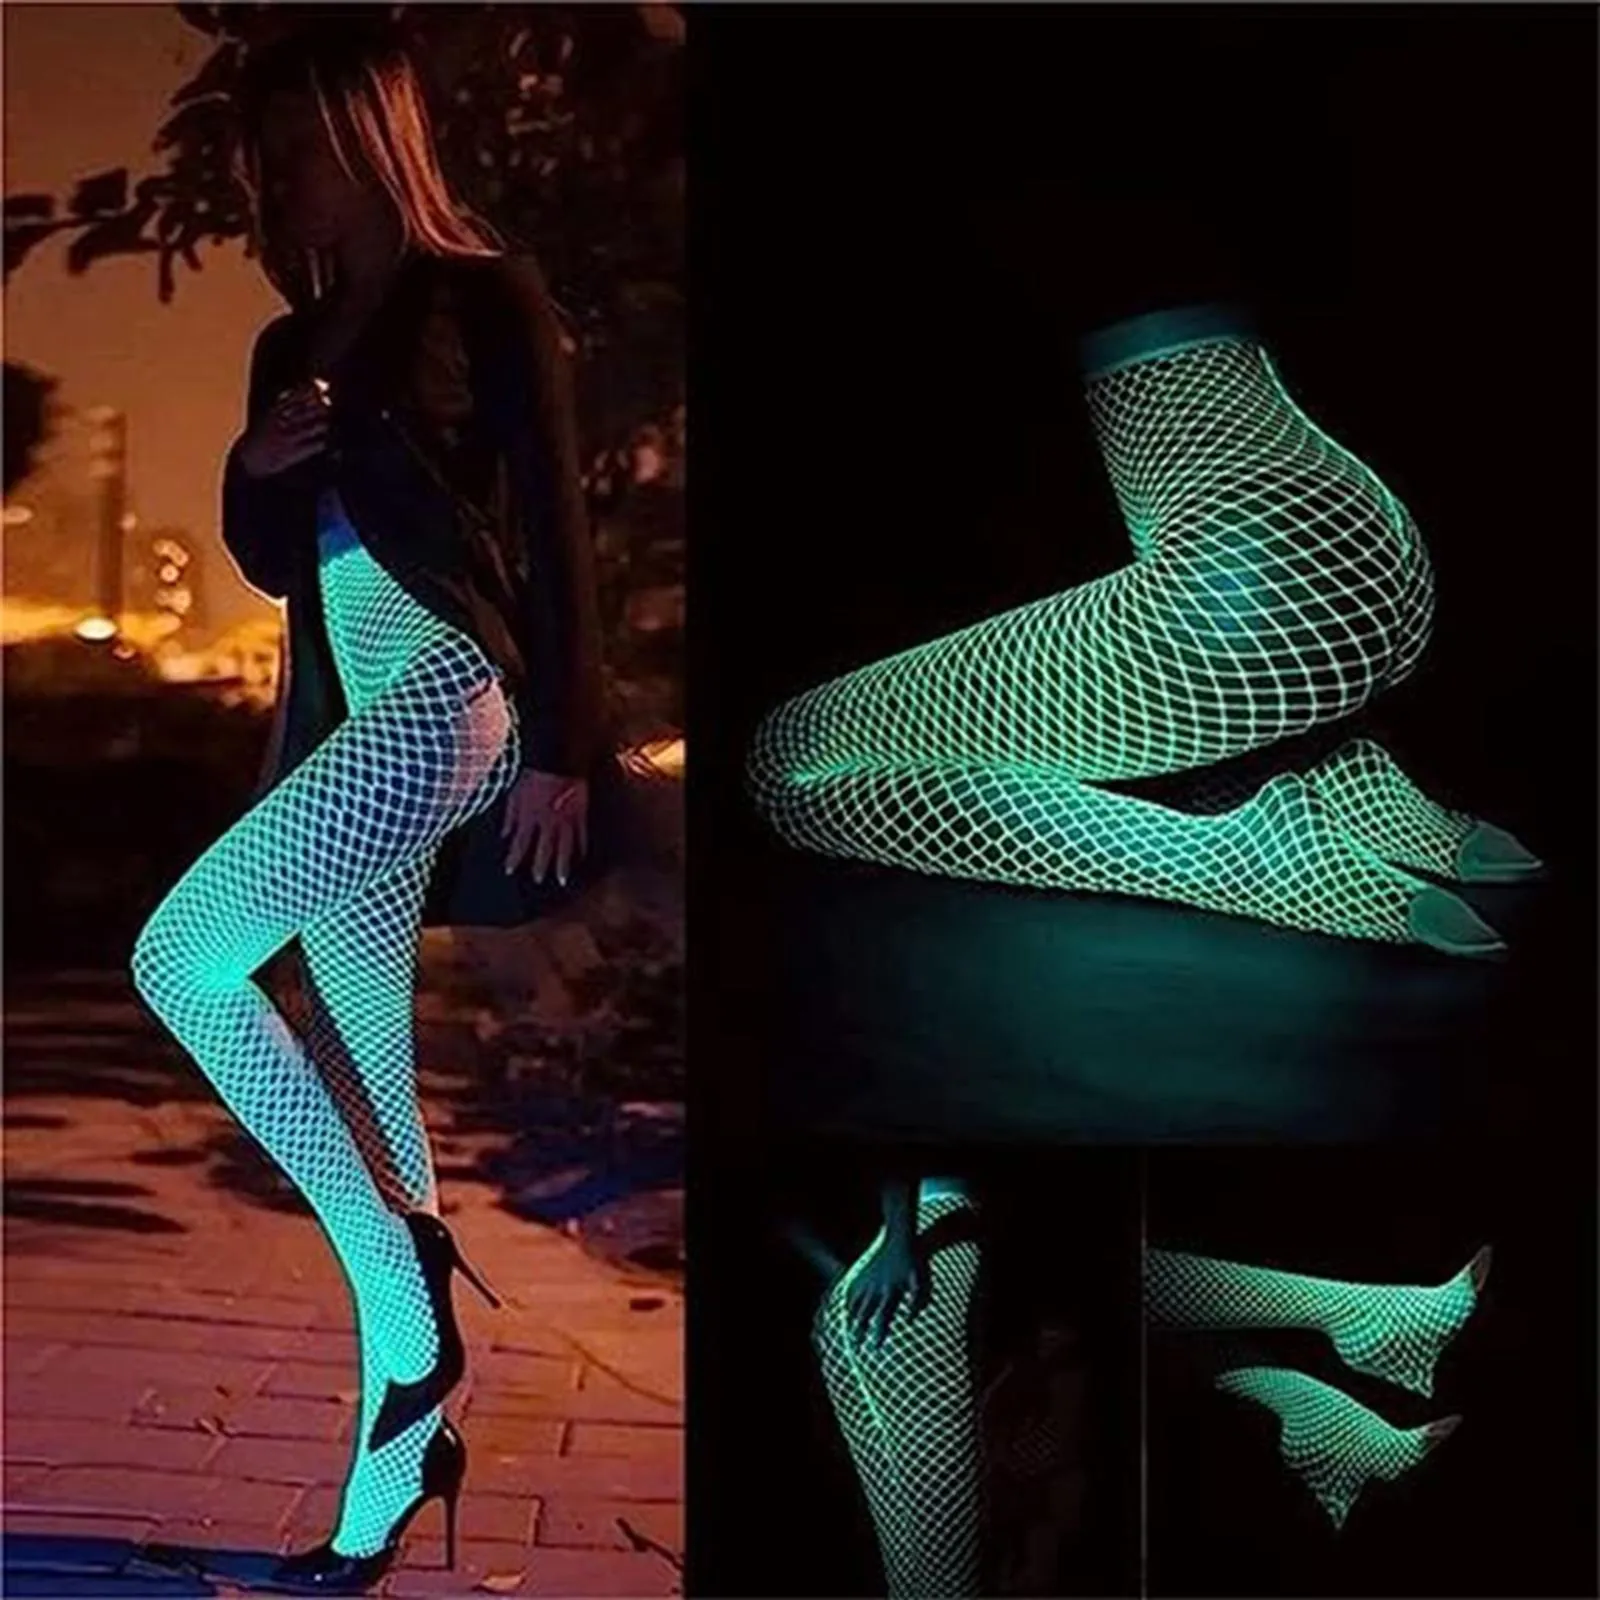 https://ae01.alicdn.com/kf/S4c621d158bdb42909b01d48bdbb54afcB/Glow-In-The-Dark-Noctilucence-Tights-Fishnet-Stockings-Leggings-women-High-Waist-Luminous-Hosiery-Female-Sheer.jpg_.webp